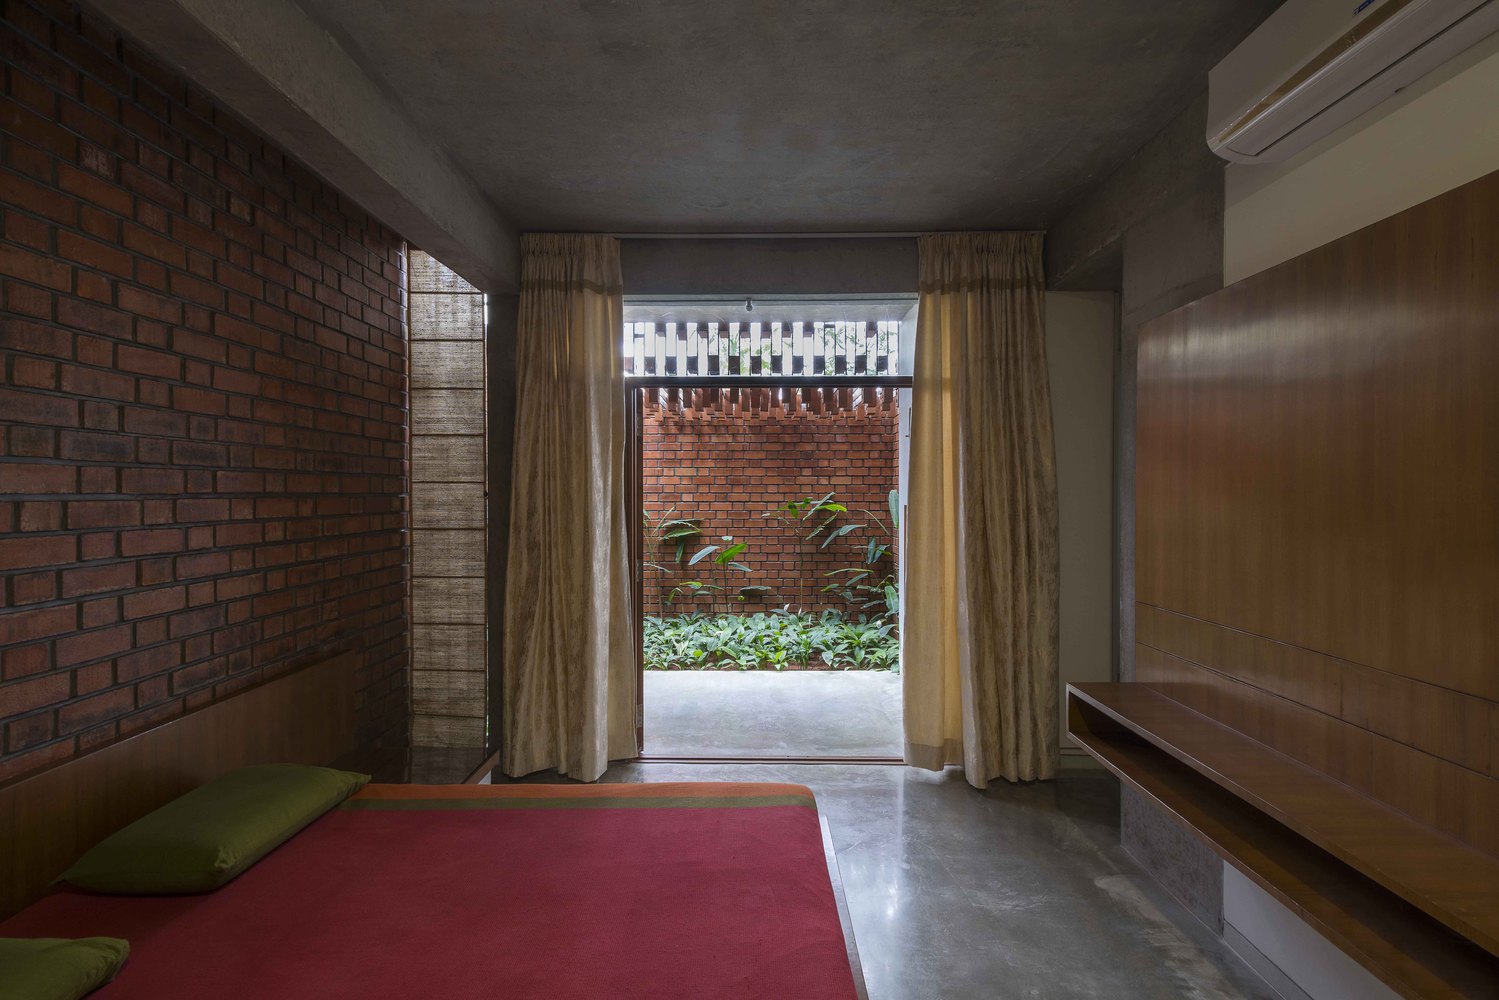  Phòng ngủ chính sử dụng tông đỏ đất từ gạch và nội thất 